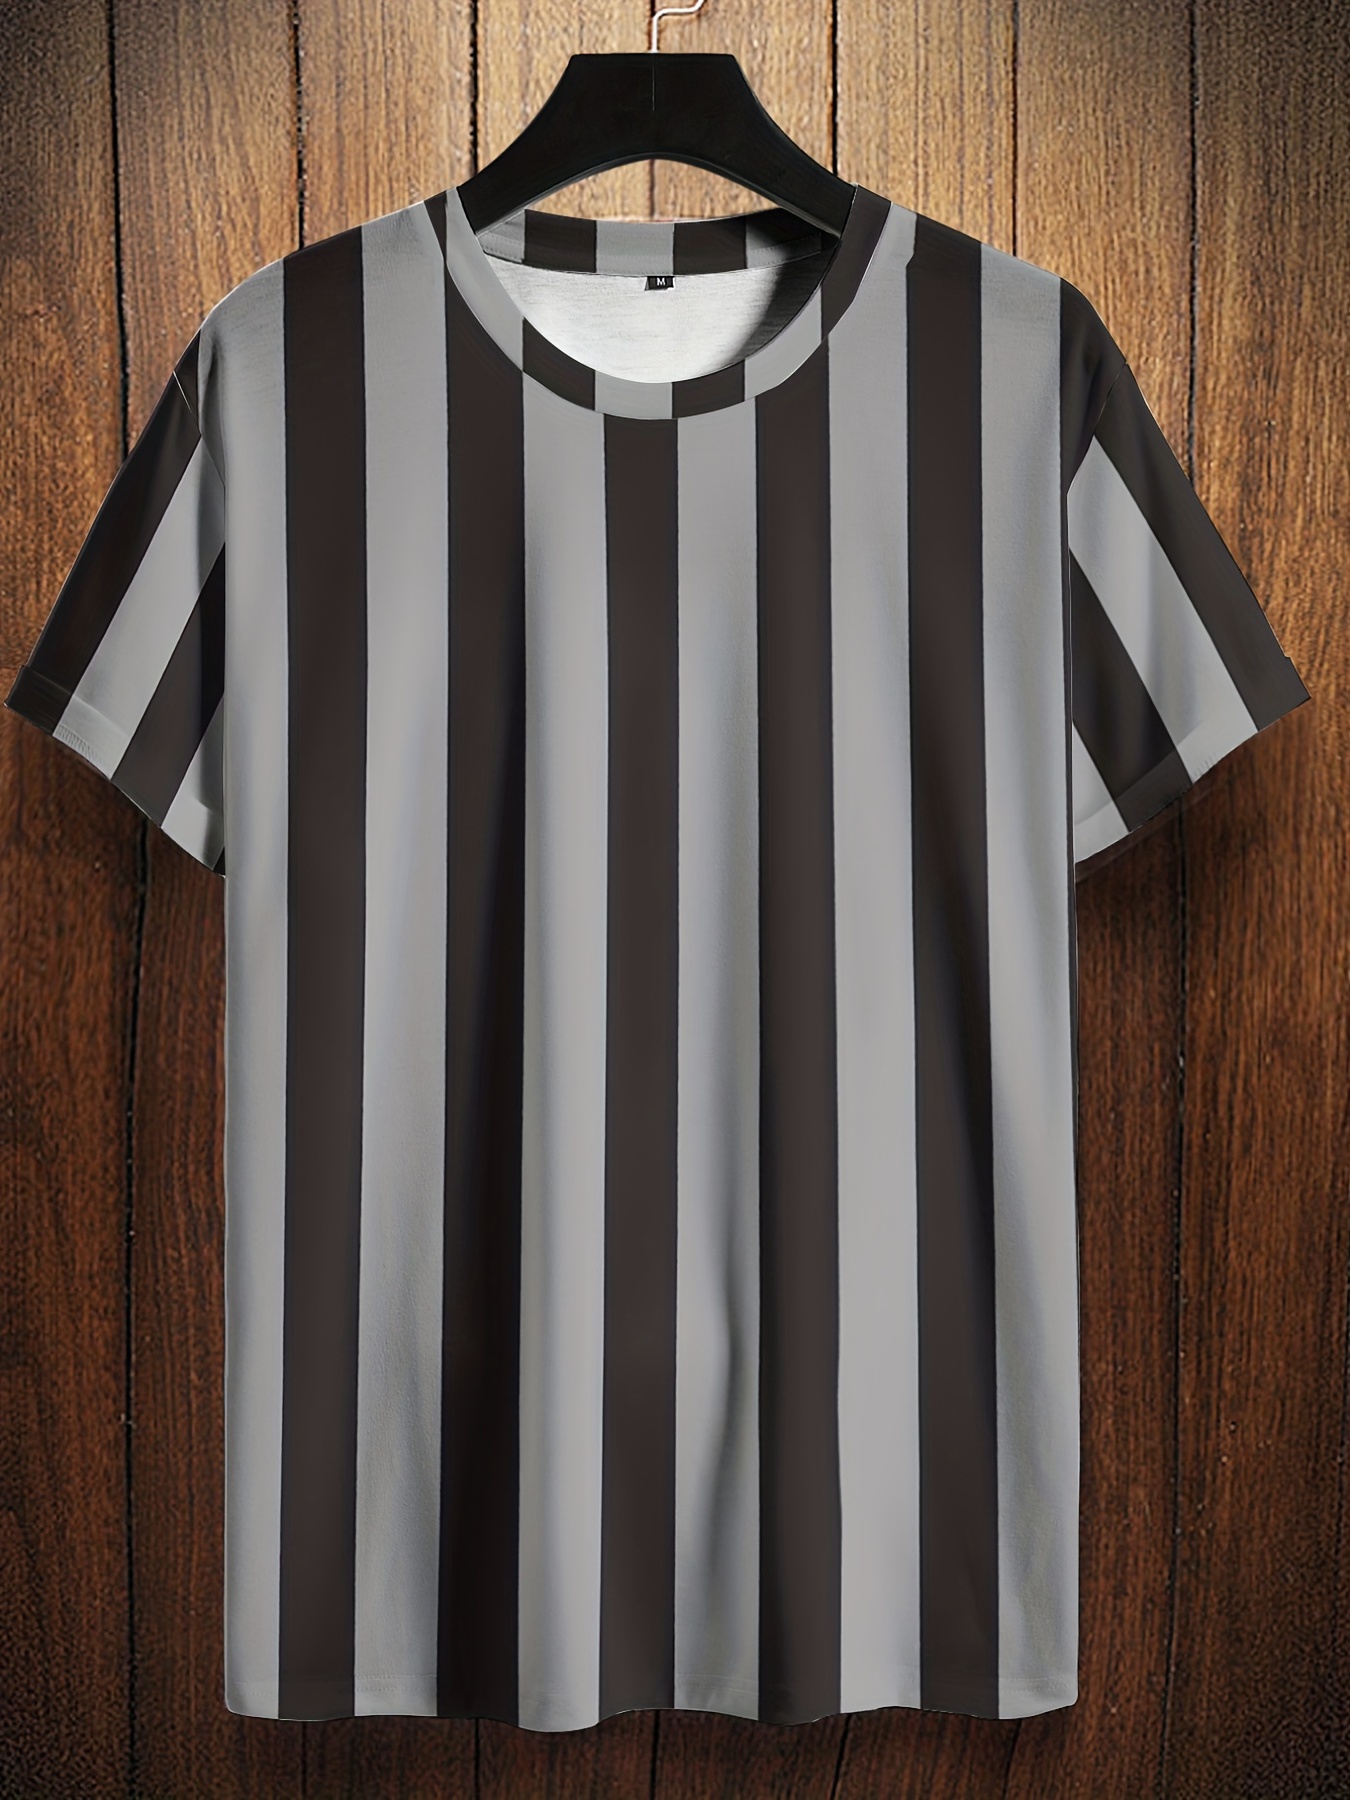 Rayas verticales blancas y negras | Camiseta gráfica